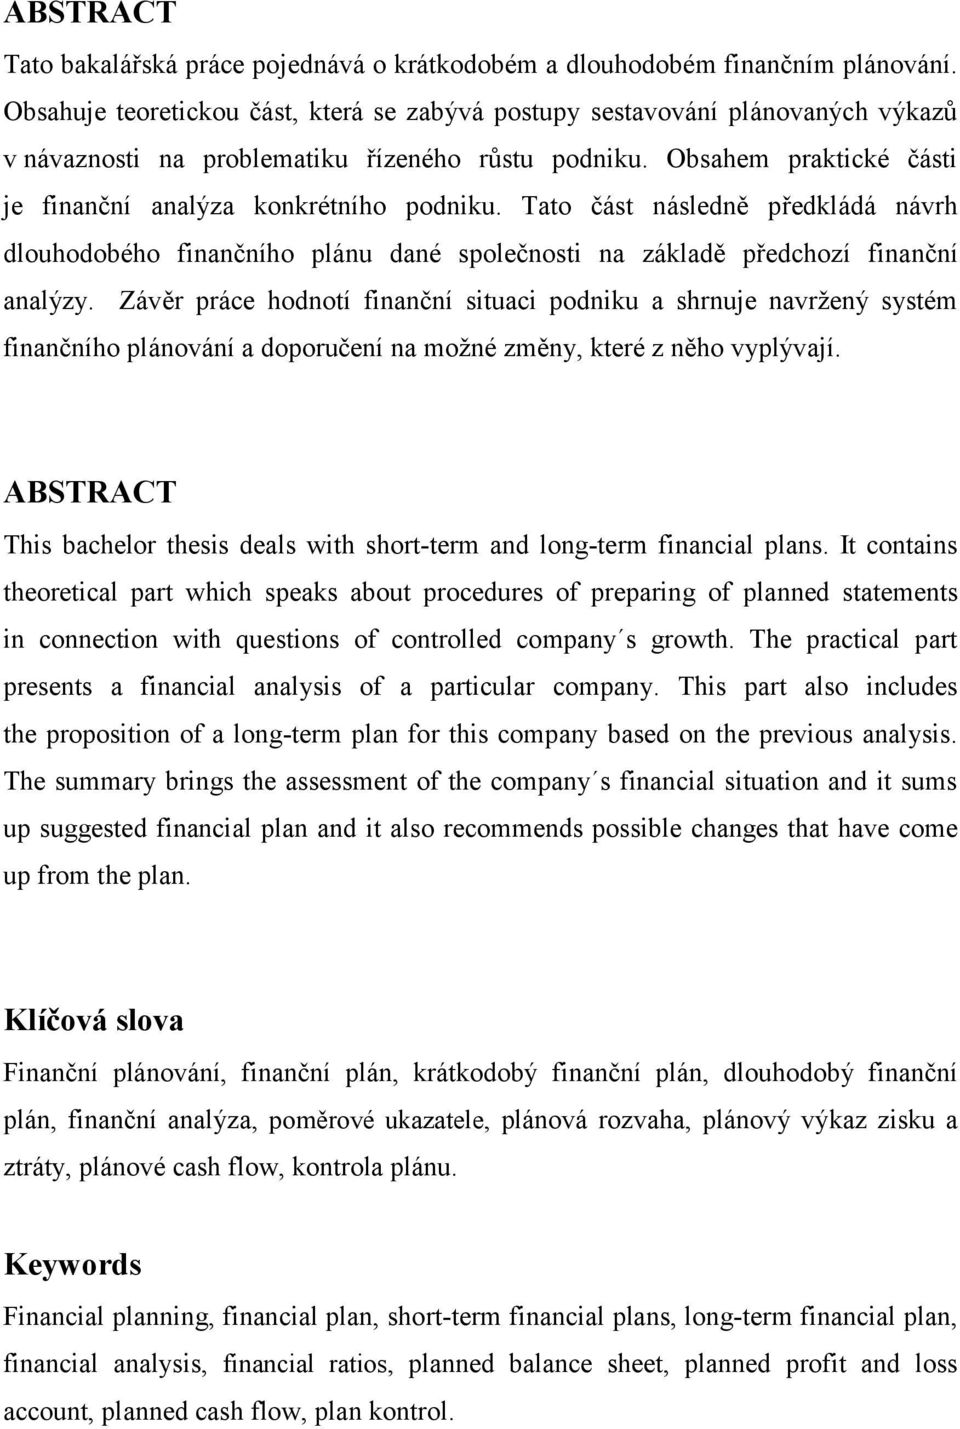 Tato část následně předkládá návrh dlouhodobého finančního plánu dané společnosti na základě předchozí finanční analýzy.